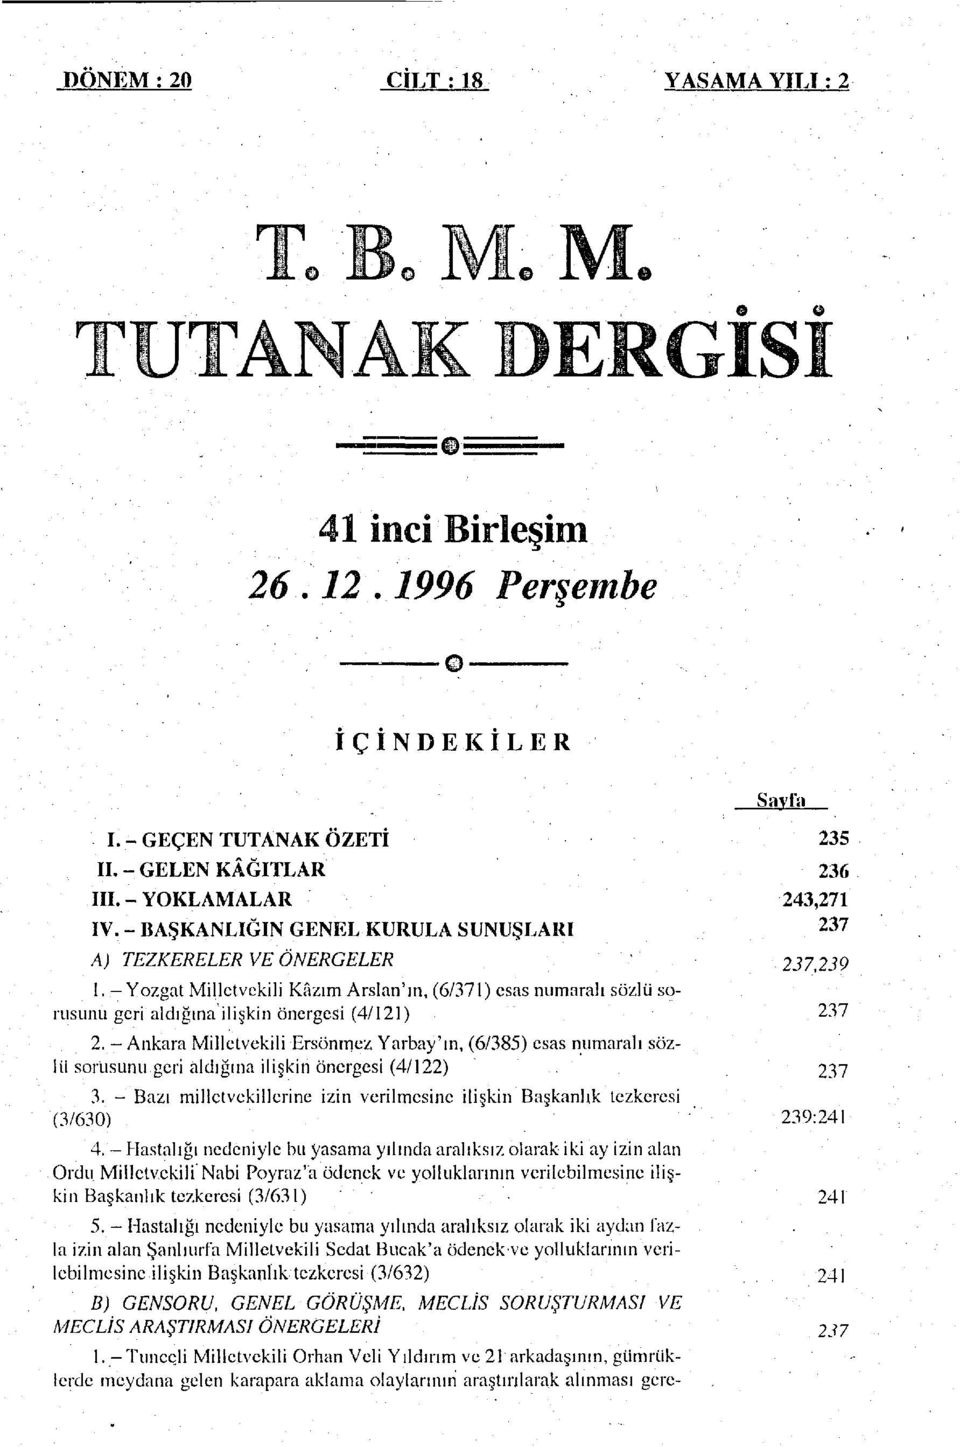 - Ankara Milletvekili Ersönmez Yarbay'ın, (6/385) esas numaralı sözlü sorusunu geri aldığına ilişkin önergesi (4/122) 3.